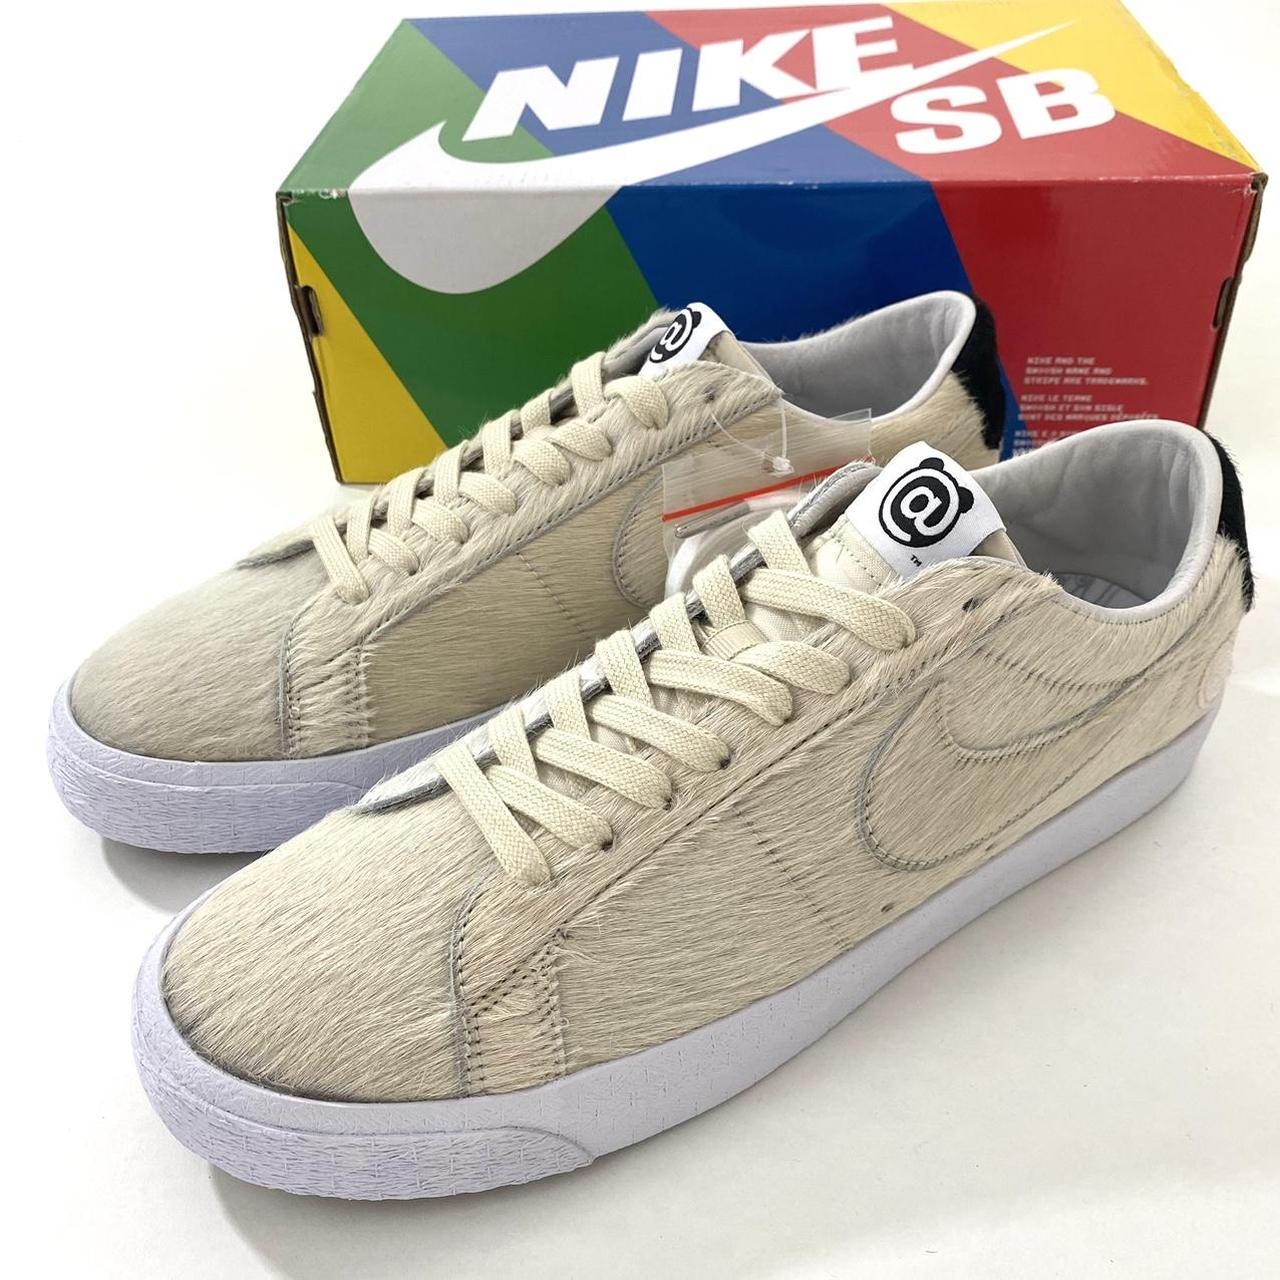 Brand New Nike SB Blazers Low Medicom Toy Bearbrick... - Depop